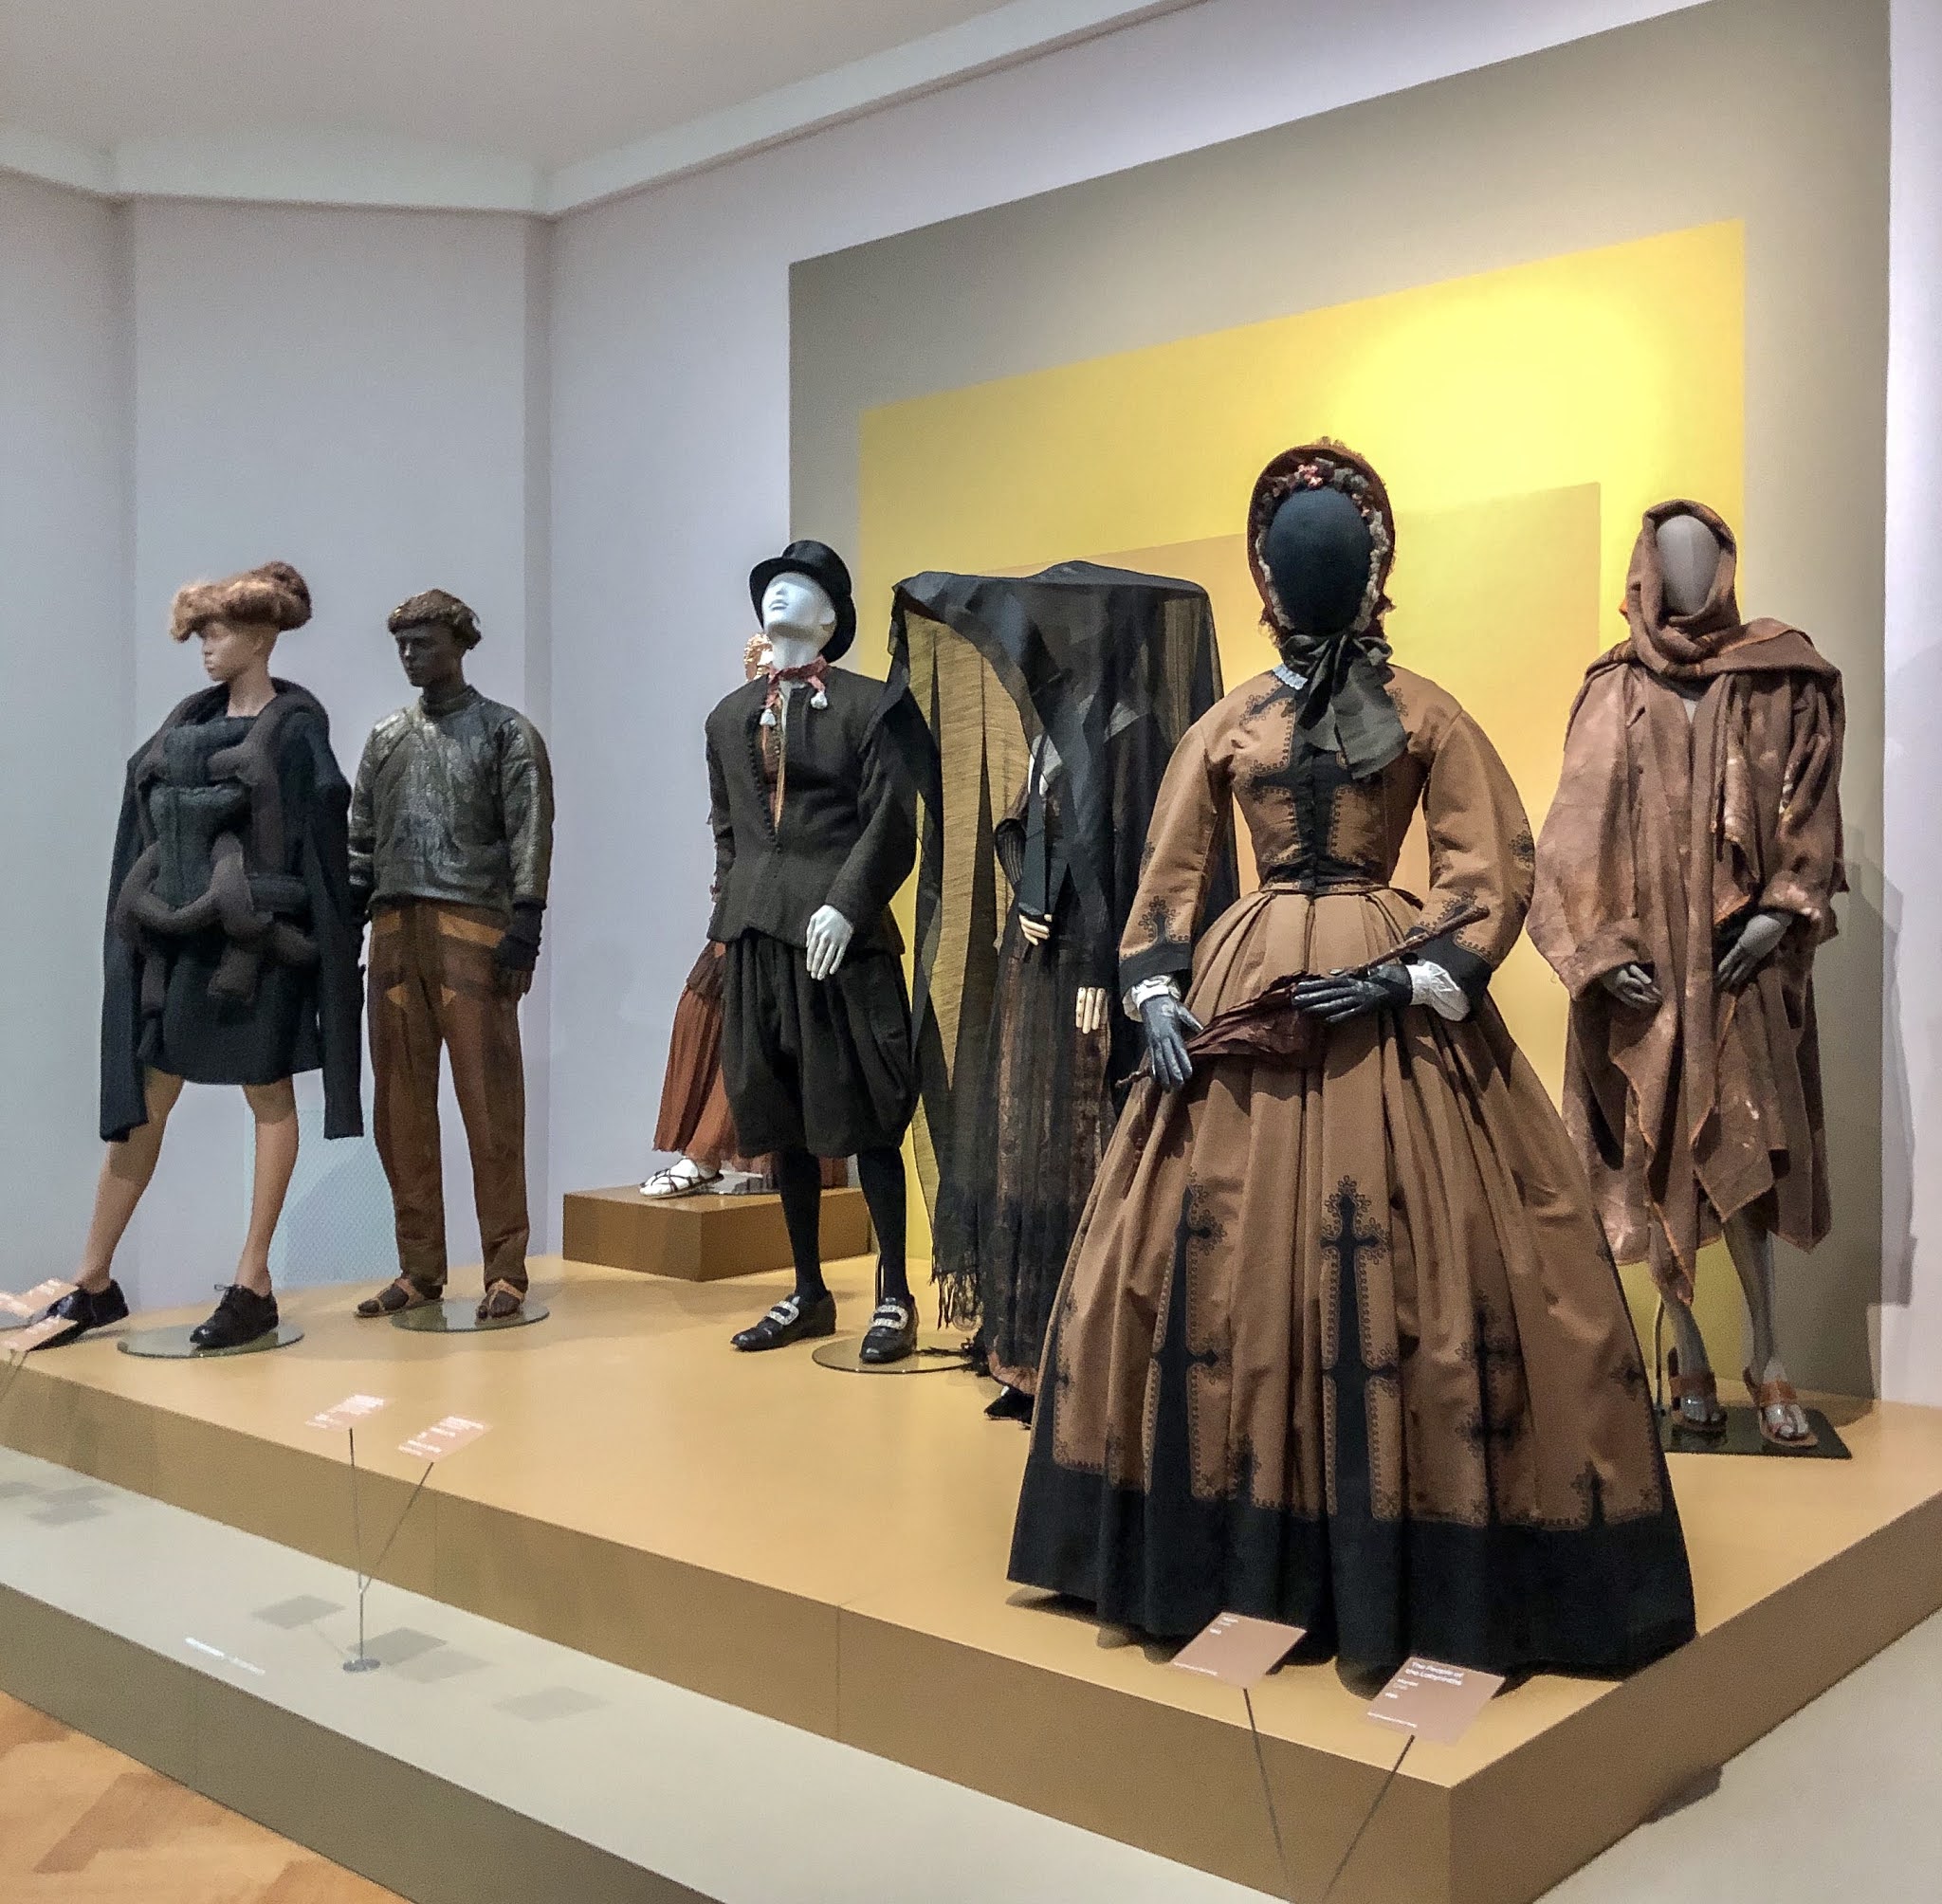 Mode in Kunstmuseum Den Haag: spetterende | agreylady